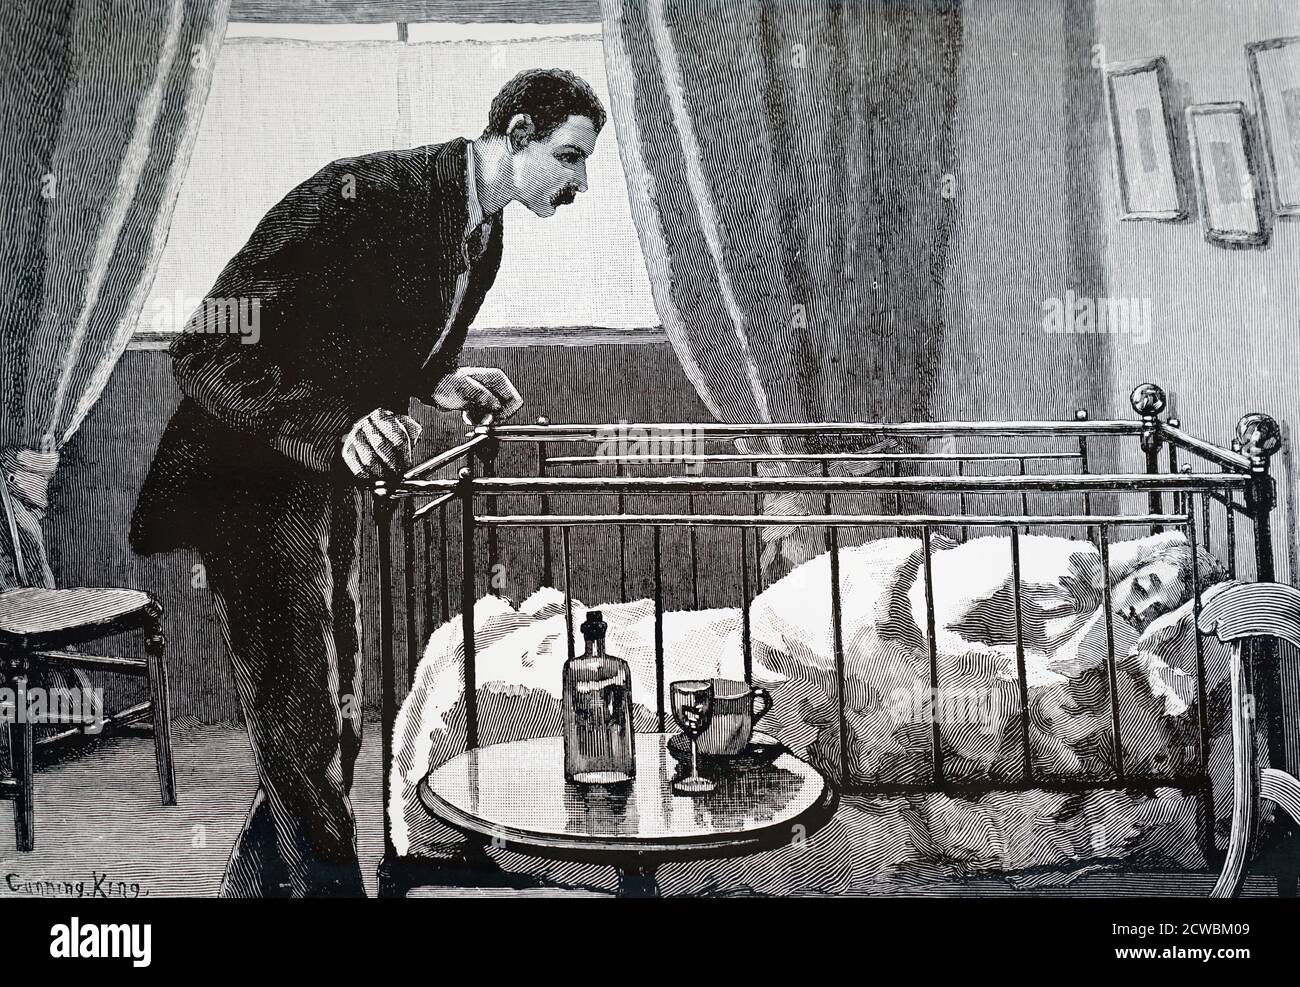 Gravur, die einen ängstlichen Vater zeigt, der sein krankes Kind in einem Kinderbett mit beweglichen Seiten bewacht. Illustriert von Gunning King. Stockfoto